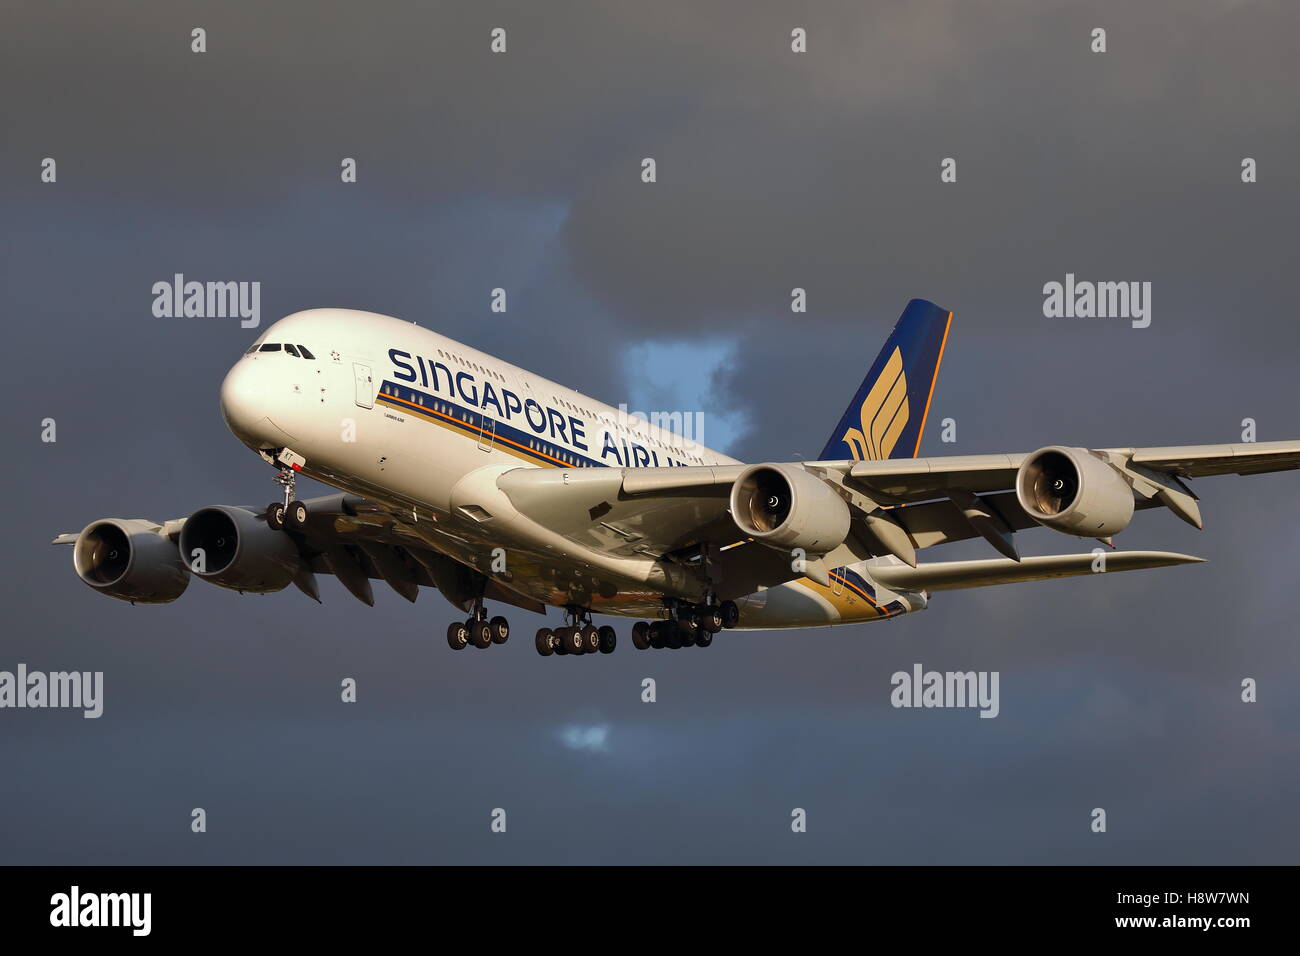 Singapore Airlines Airbus A380-Landung am Flughafen London Heathrow, Vereinigtes Königreich Stockfoto